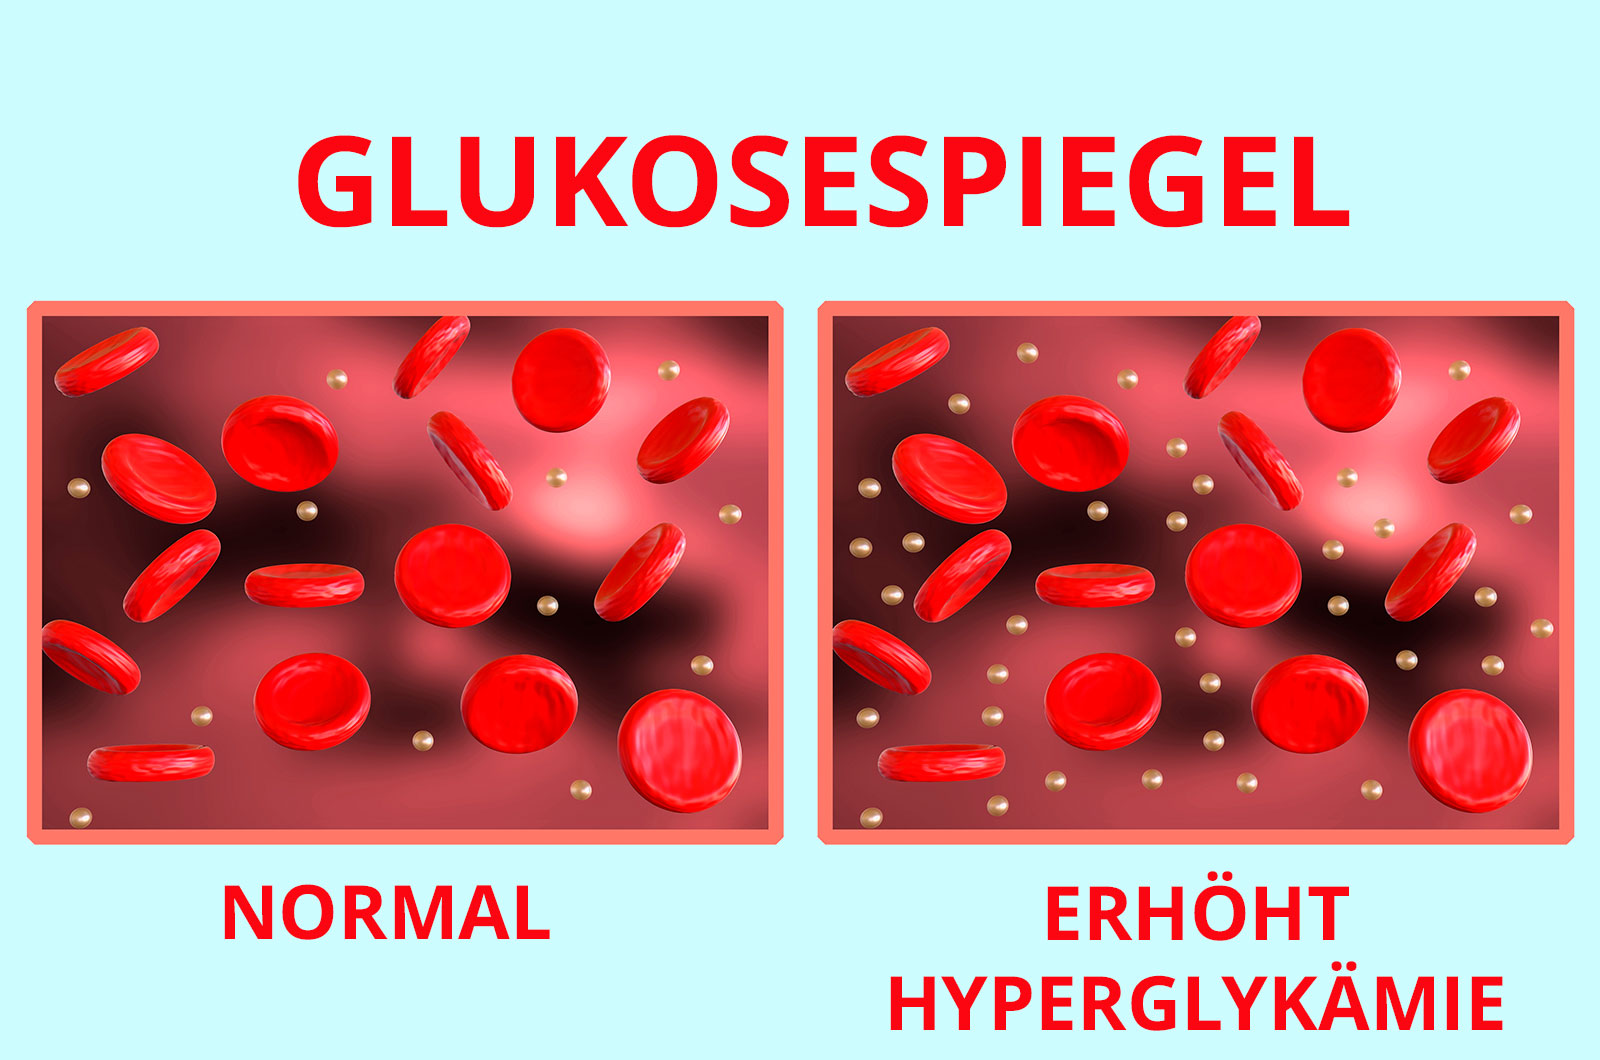 Glukosespiegel im Blut, Abbildung mit normalen Werten, Abbildung mit erhöhten Werten, die auf Diabetes hinweist